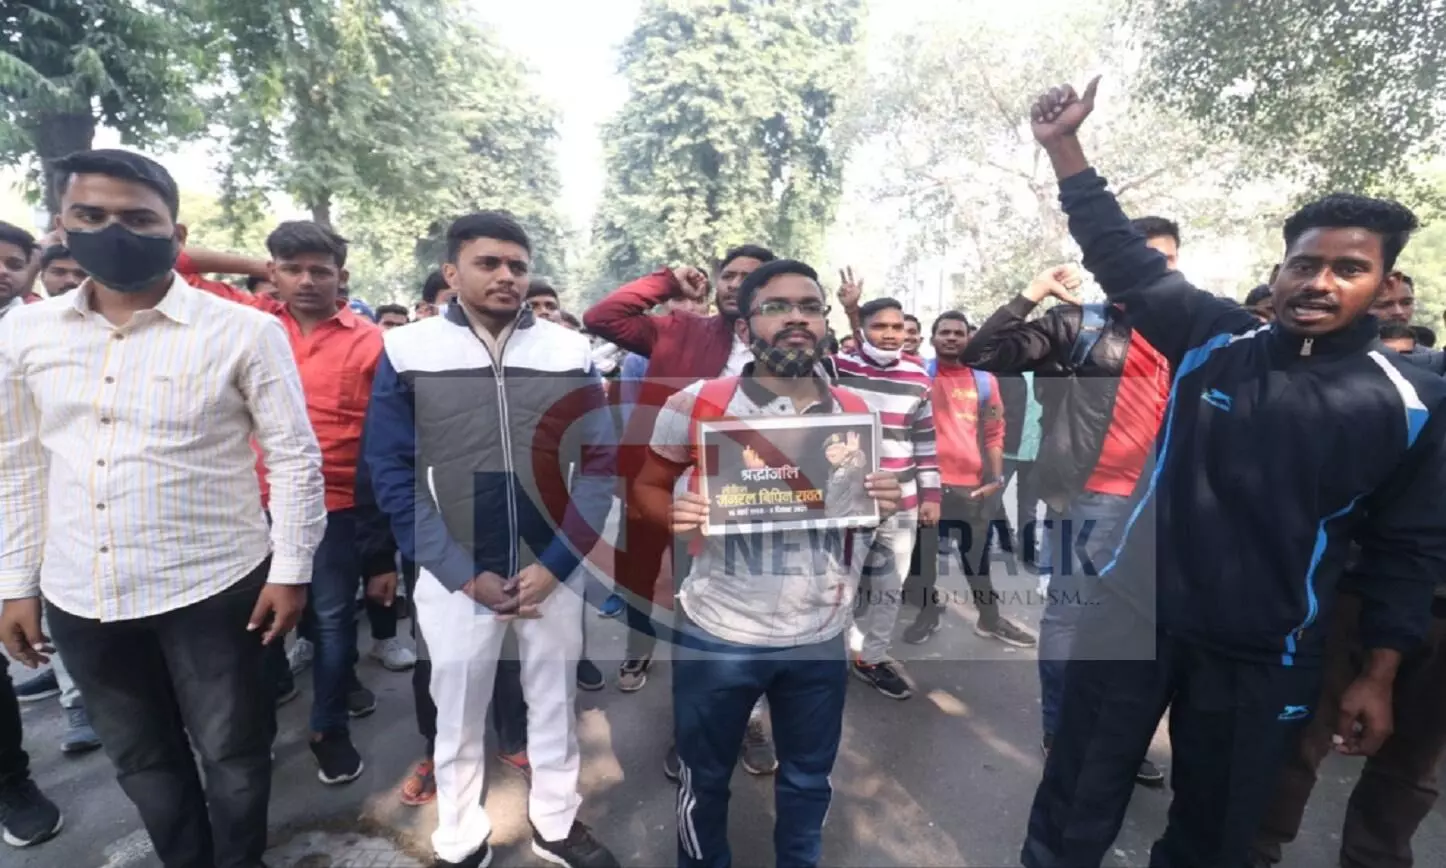 लखनऊ विश्वविद्यालय हॉस्टल के छात्रों ने बिपिन रावत और अन्य सैन्य कर्मियों की शहादत पर निकाली रैली